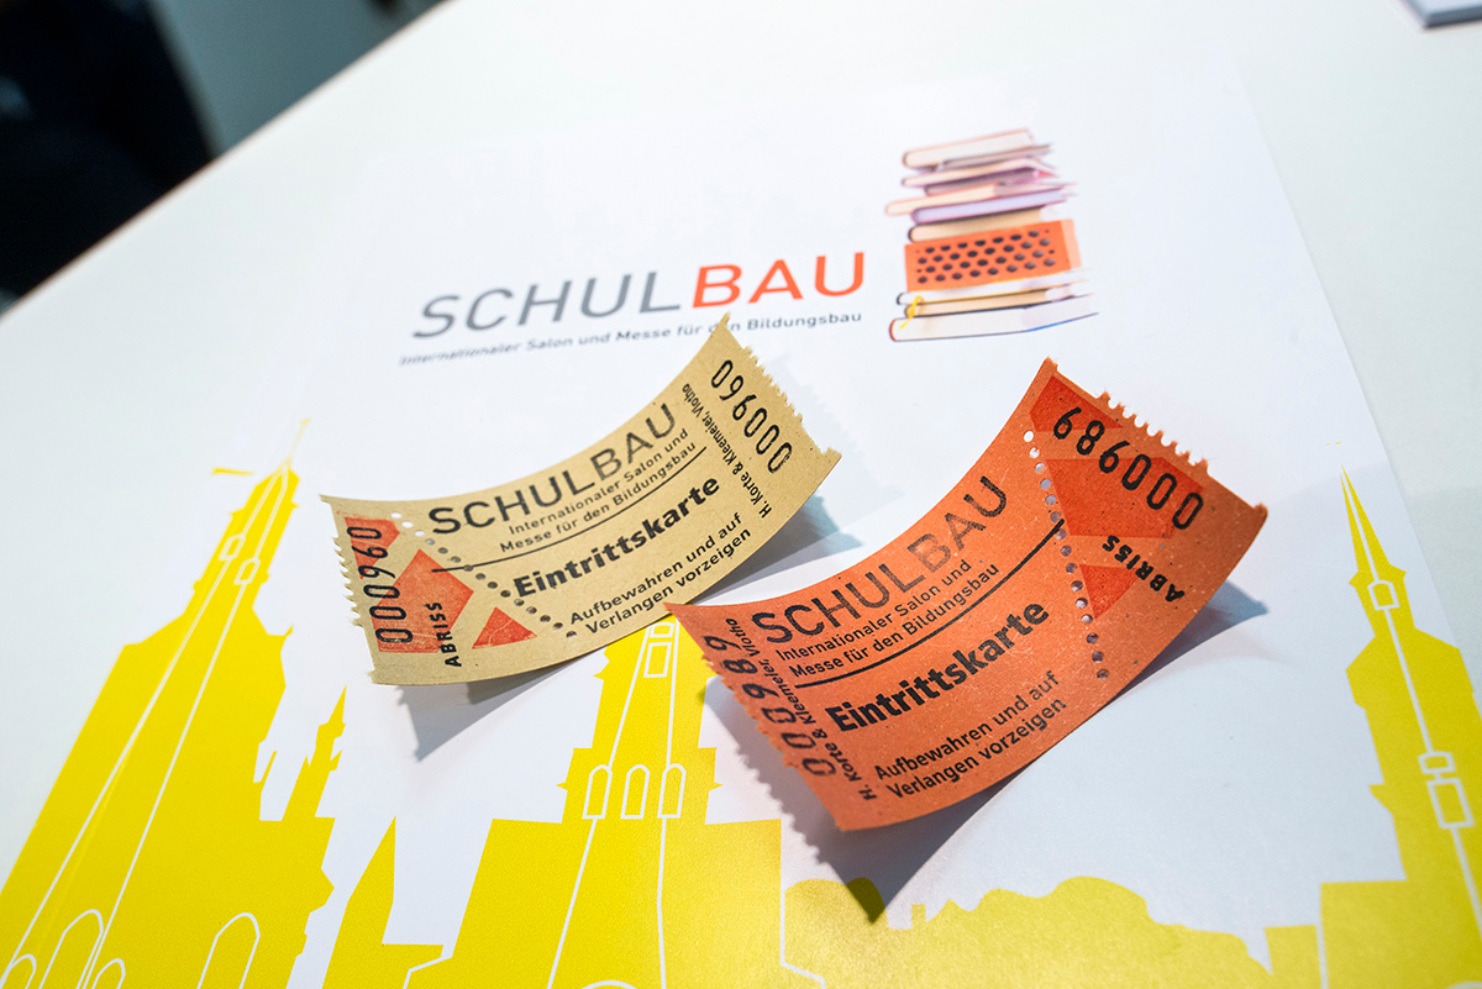 Les tickets d’entrée pour le salon SCHULBAU à Berlin étaient convoités